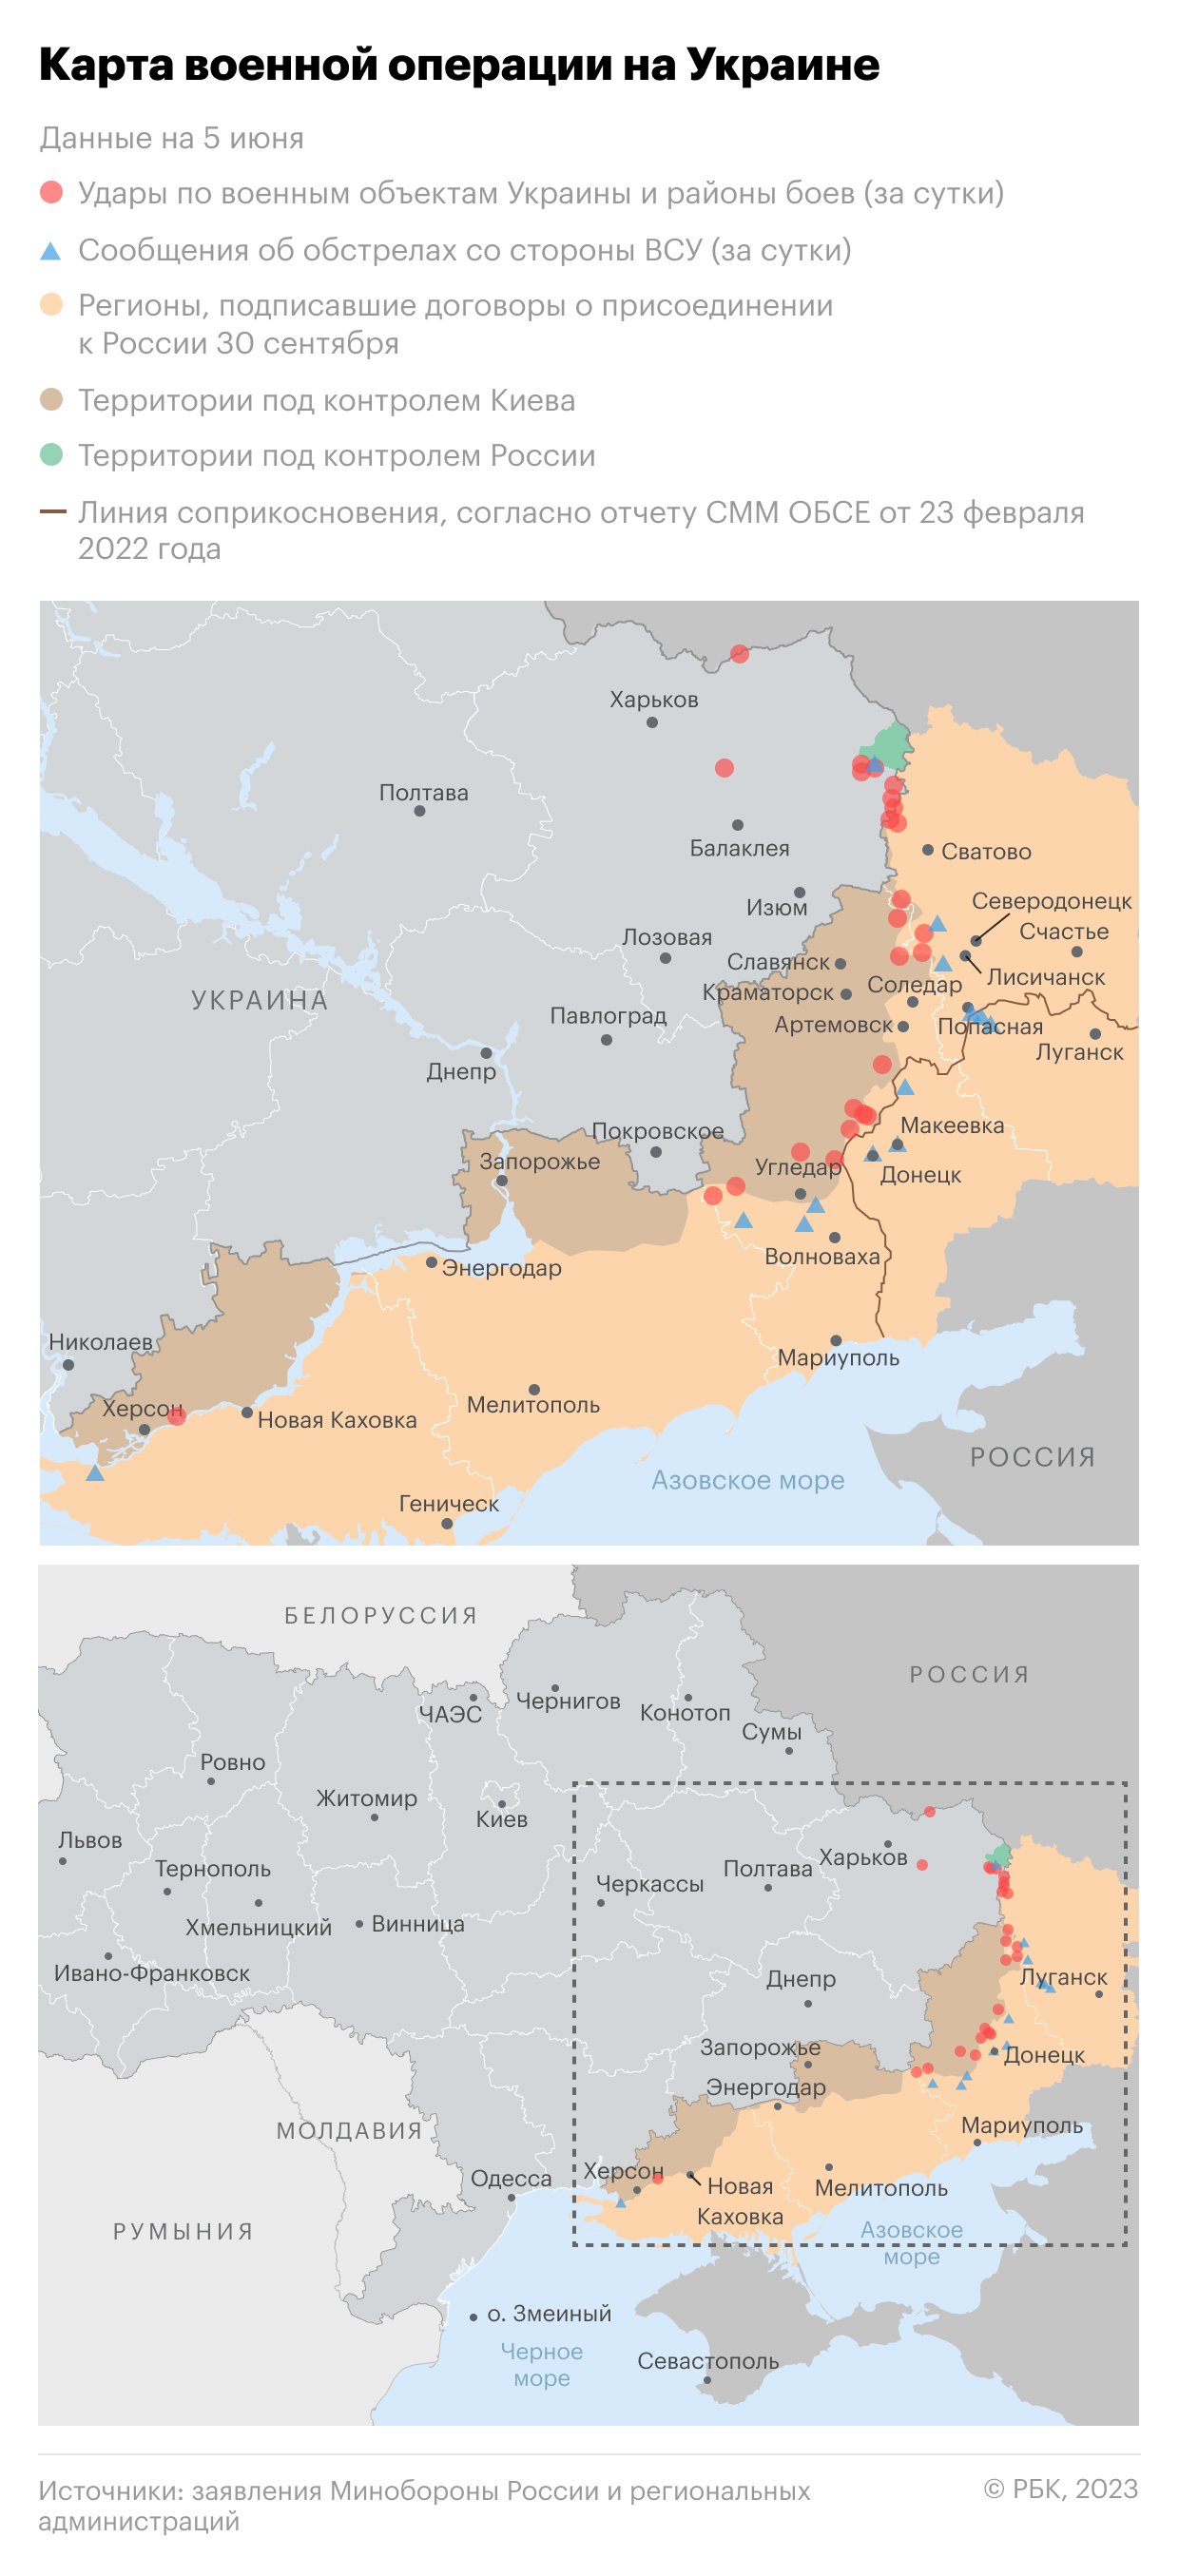 Военная операция на Украине. Карта на 5 июня